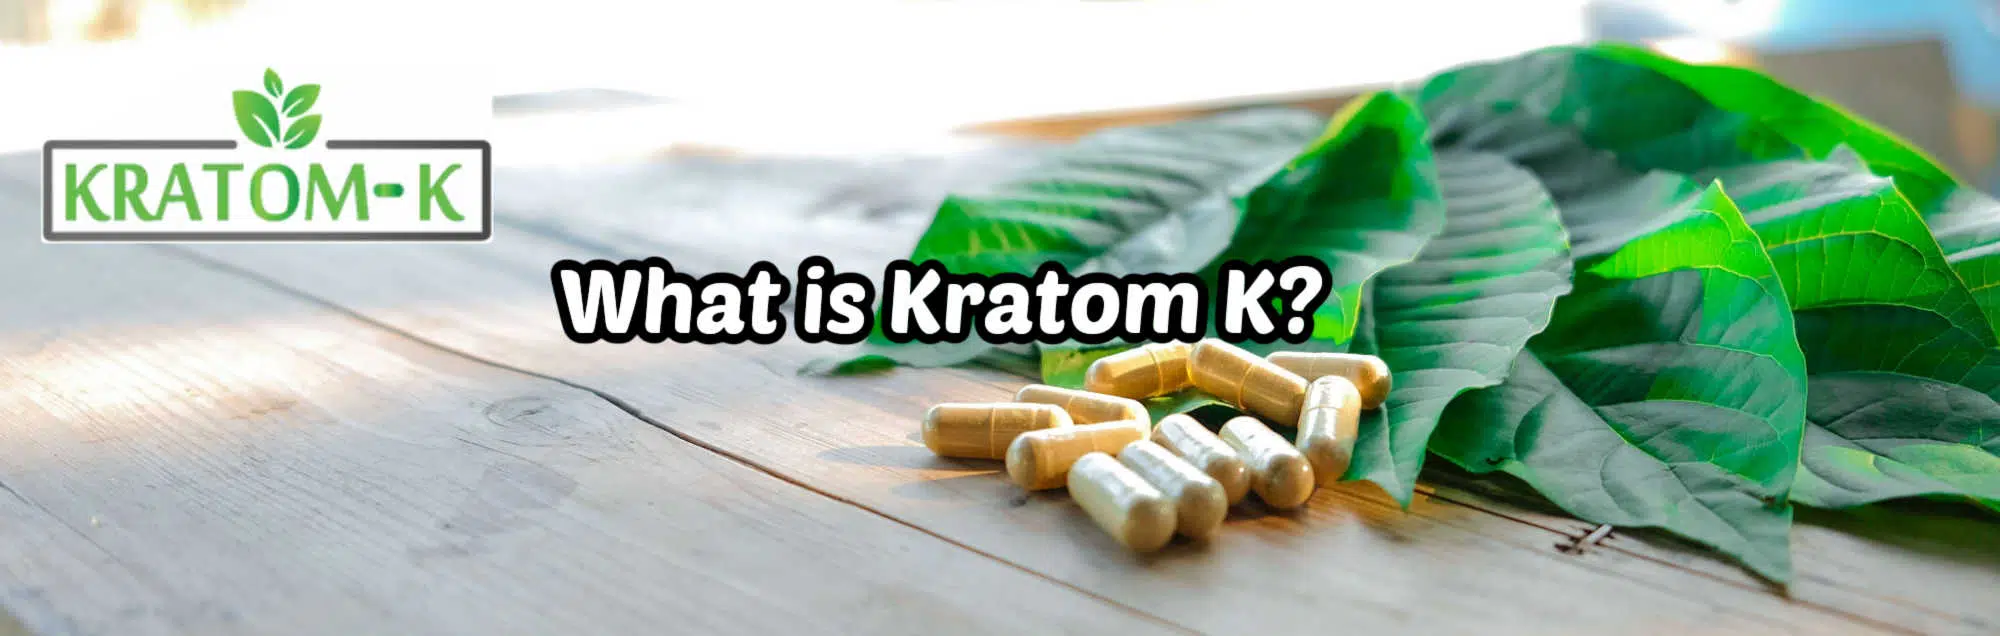 image of what is kratom k